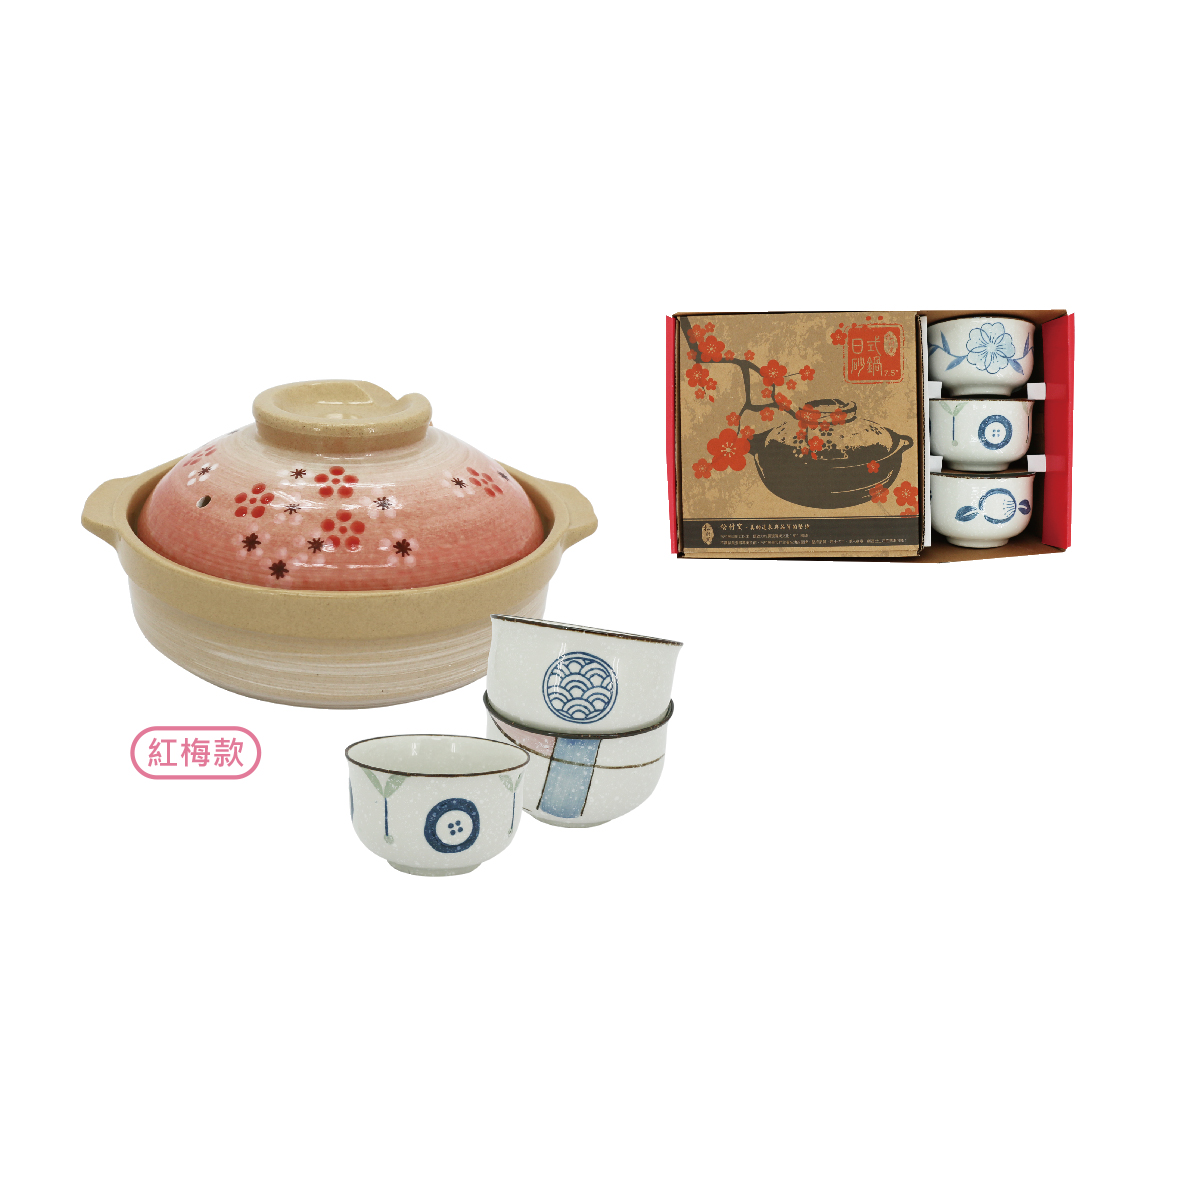 松村窯3反口雪花碗+7.5吋砂鍋-紅梅